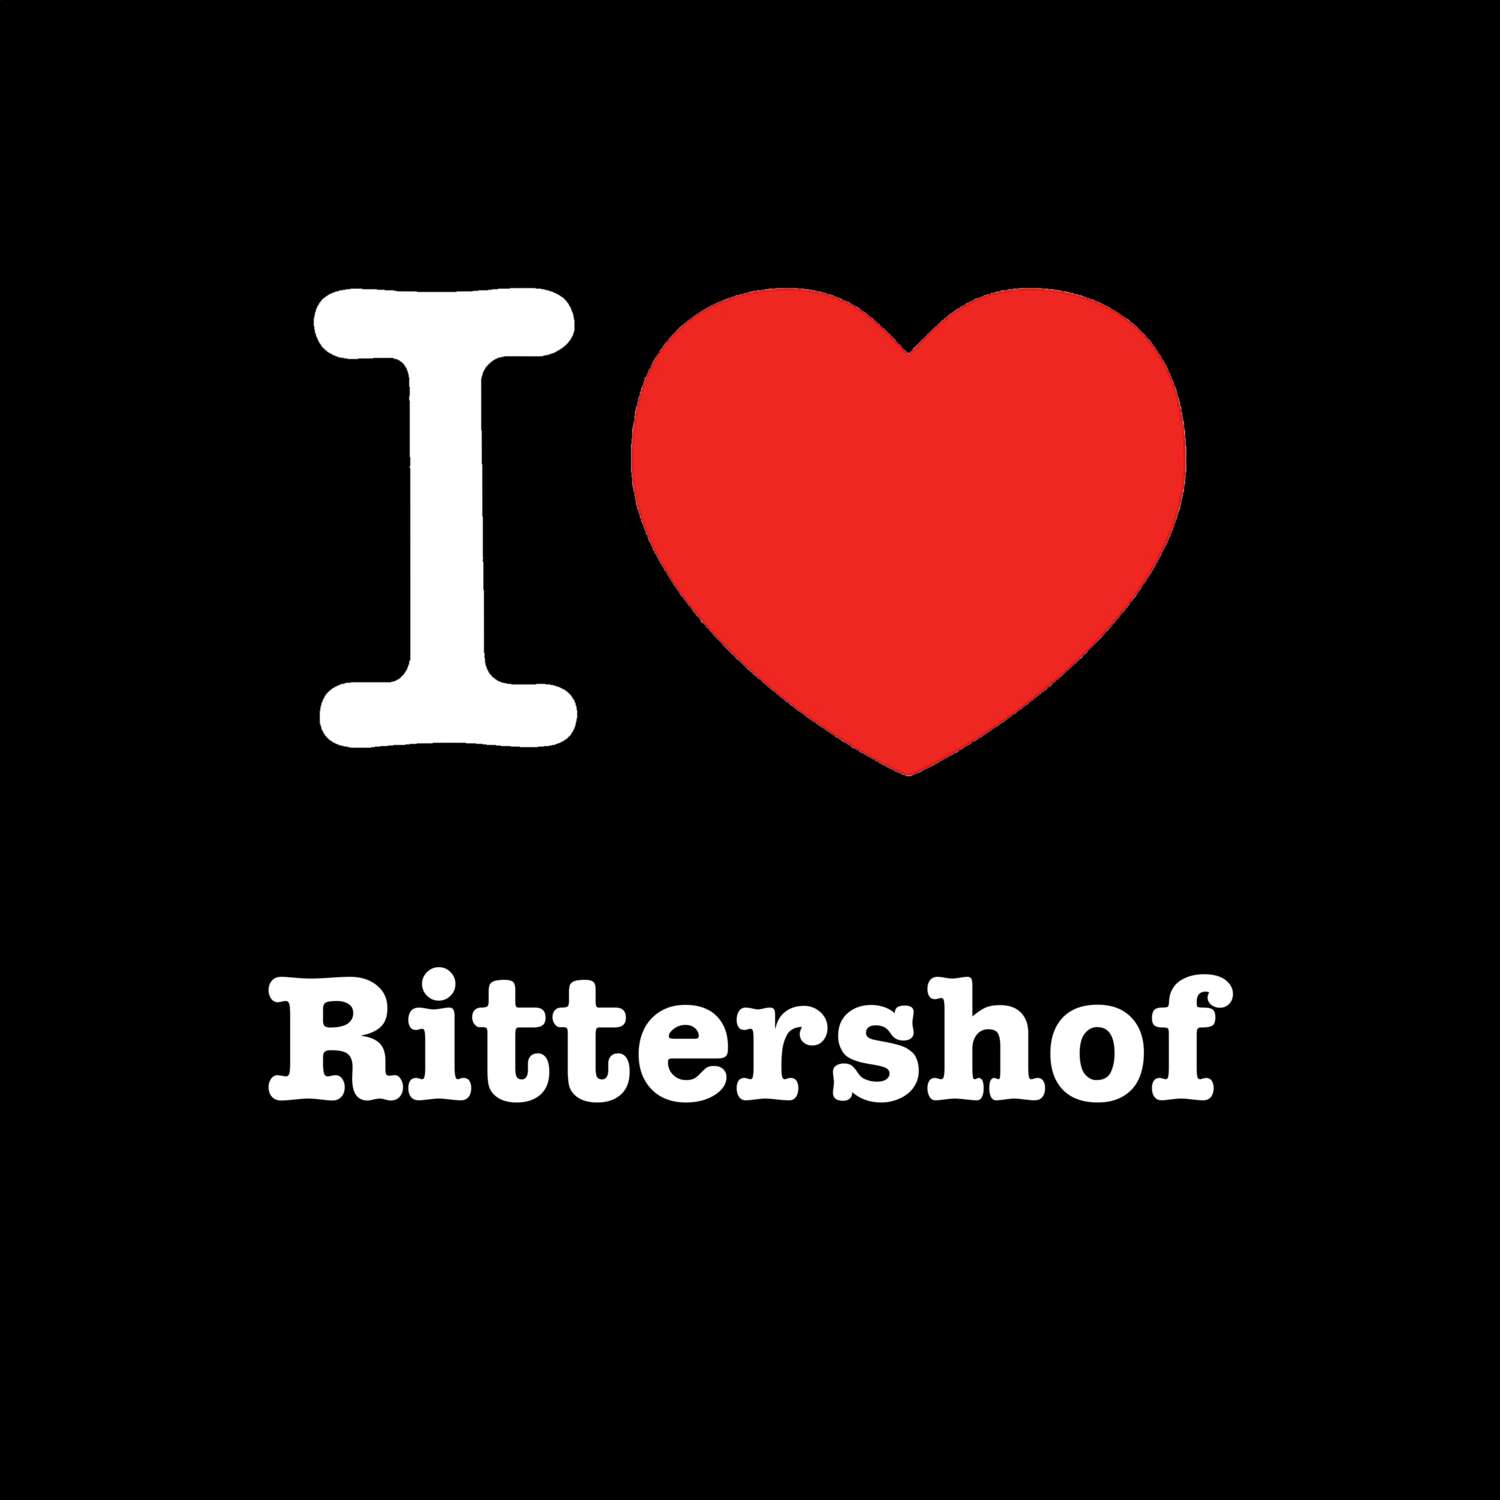 Rittershof T-Shirt »I love«